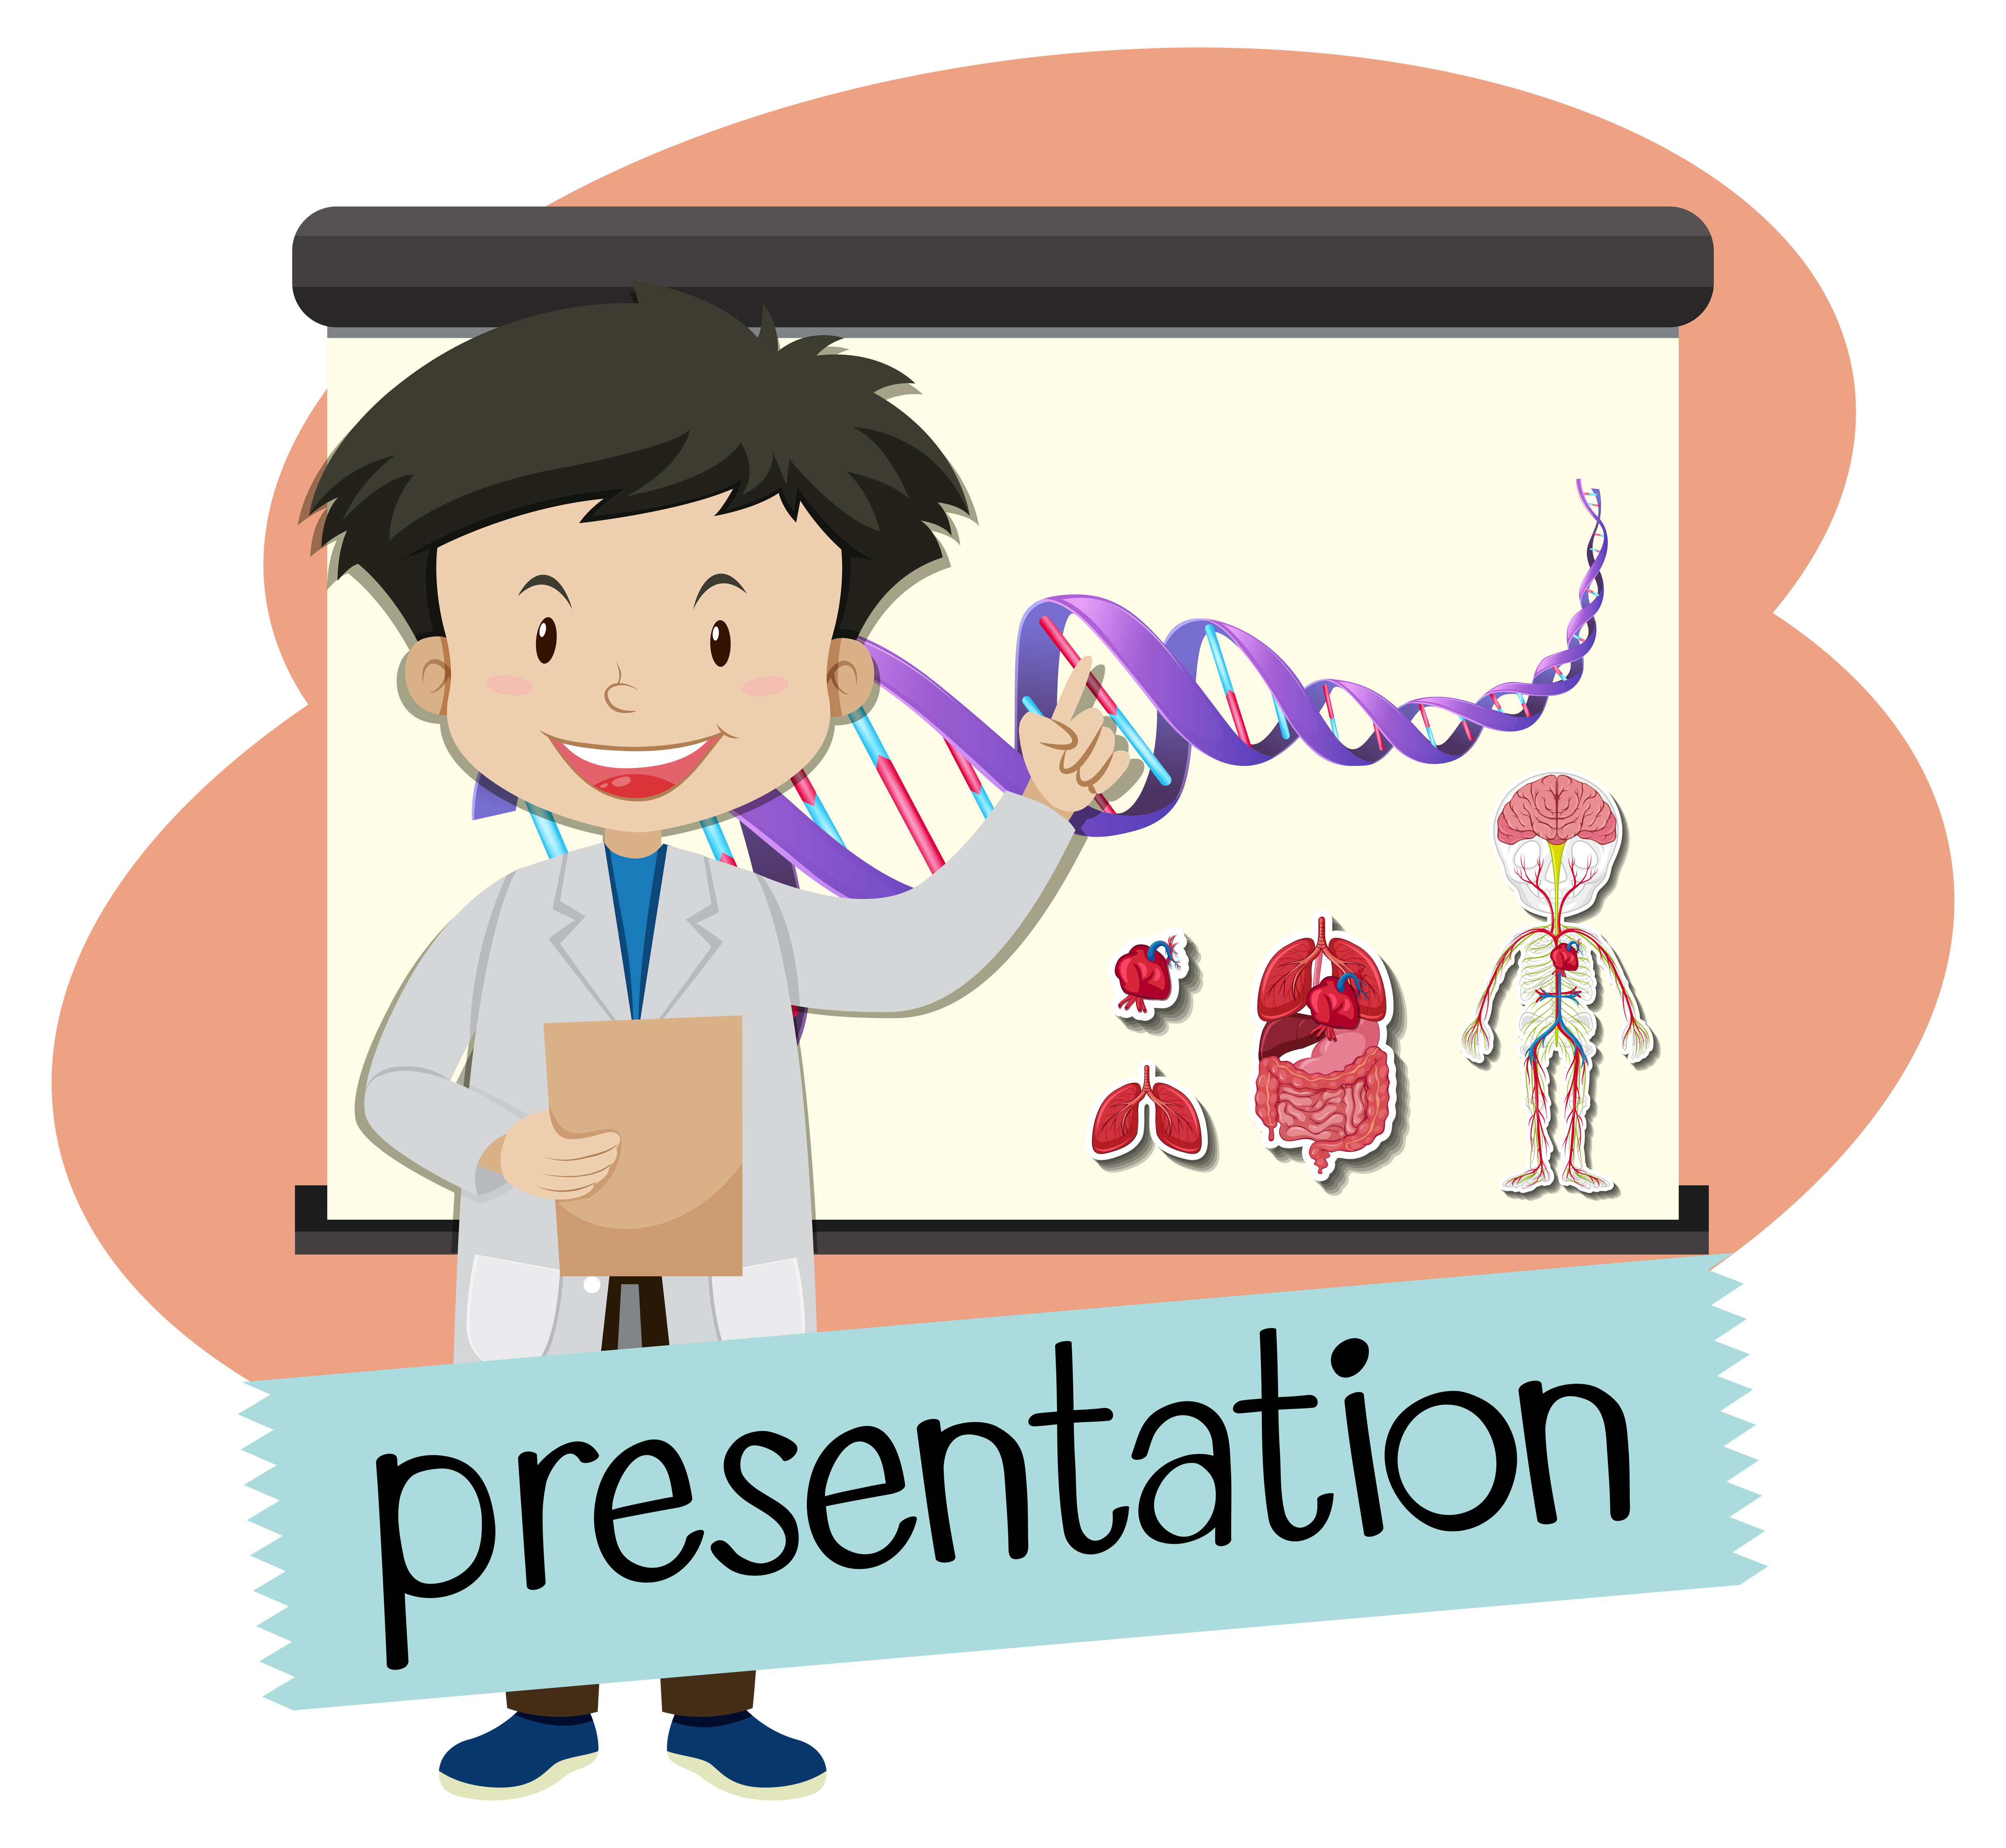 scientific presentation clipart